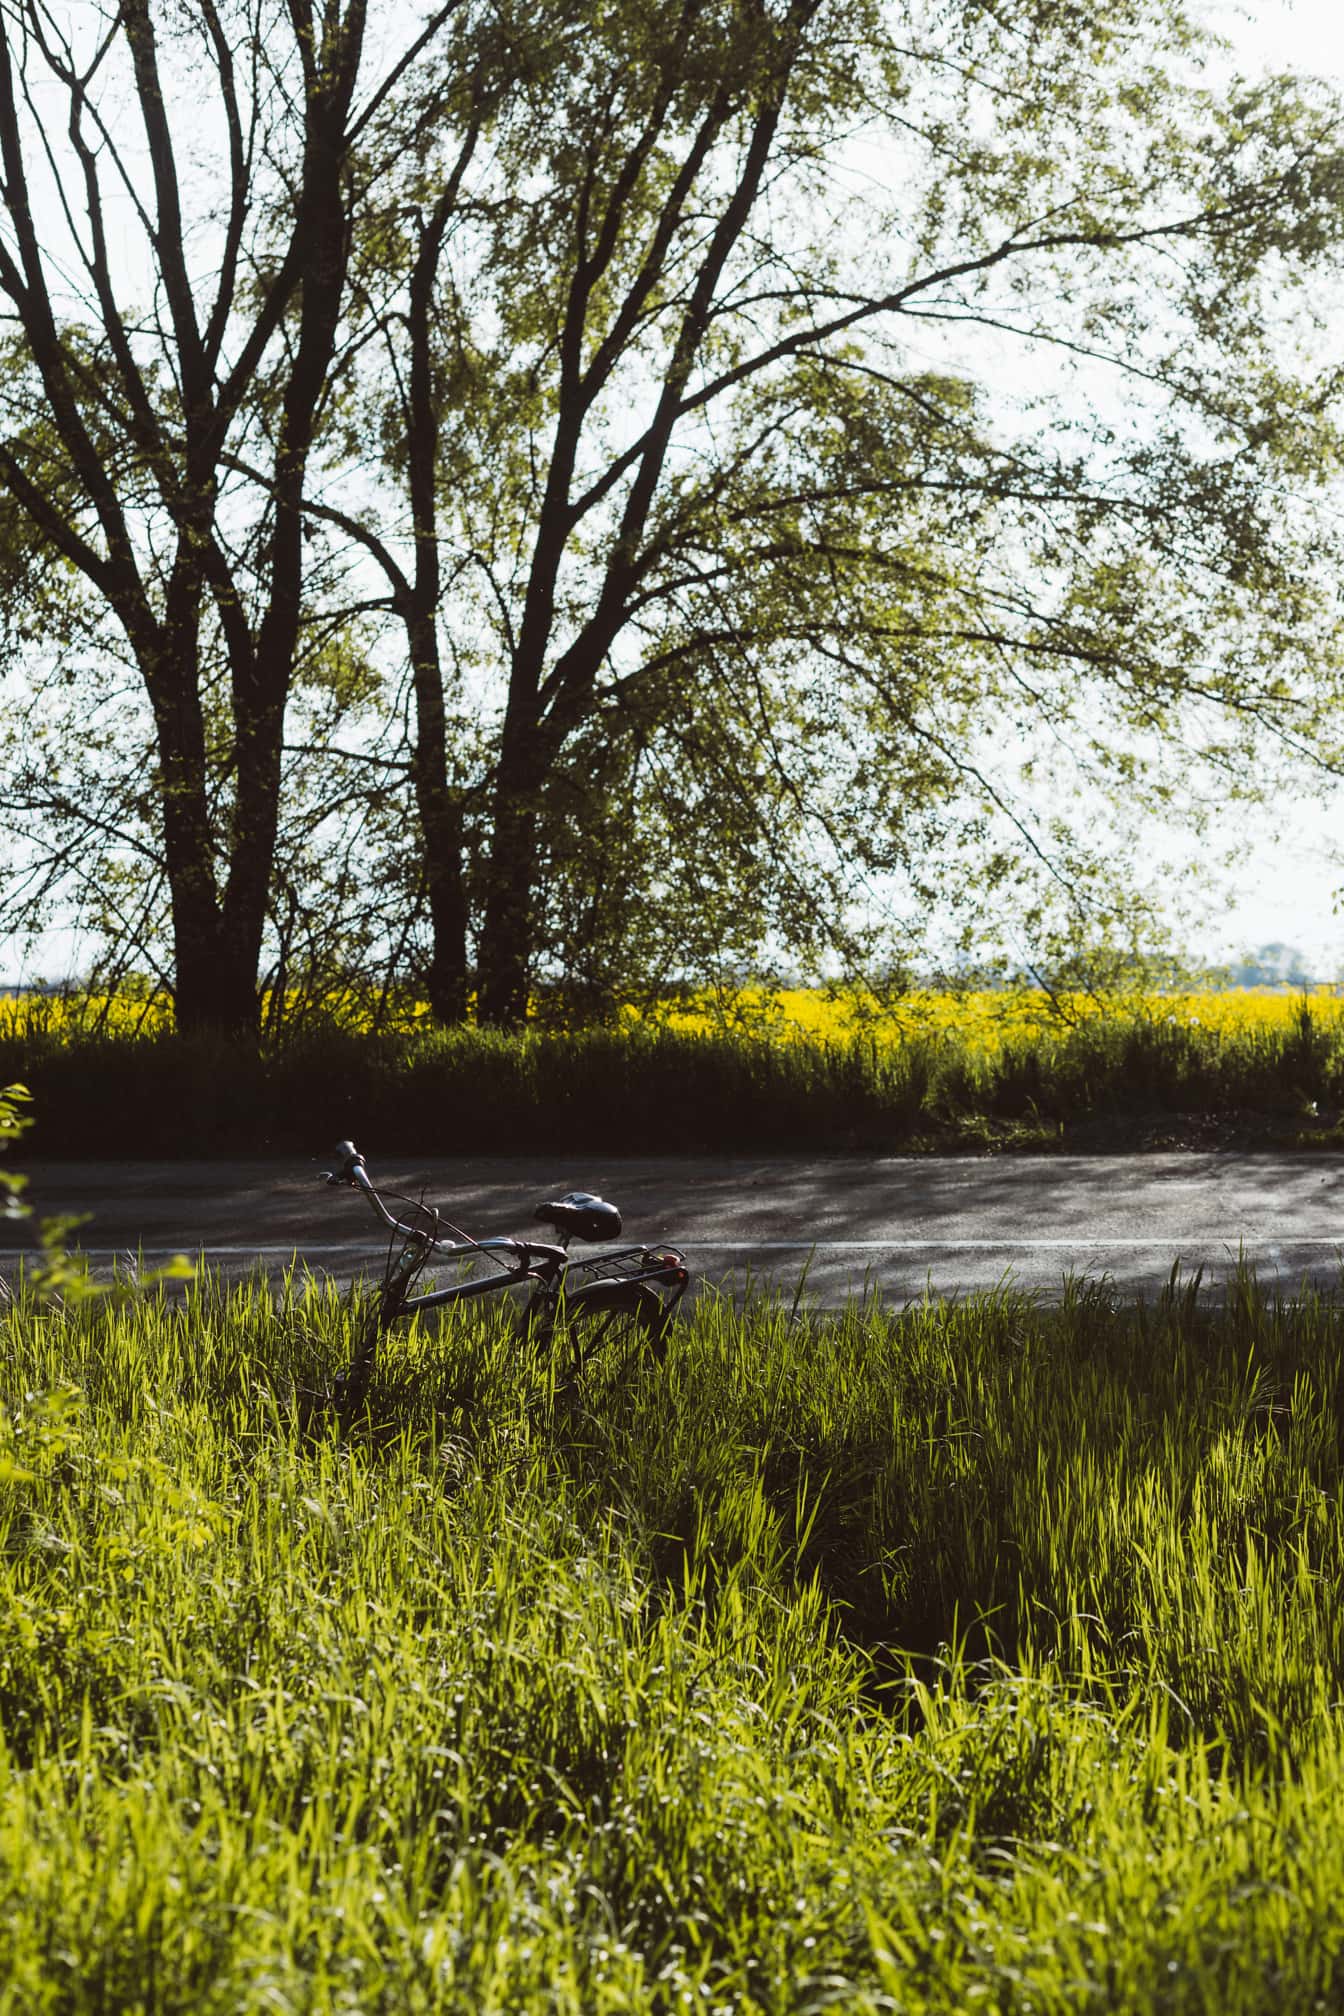 Sort klassisk cykel i højt græs ved asfaltvej